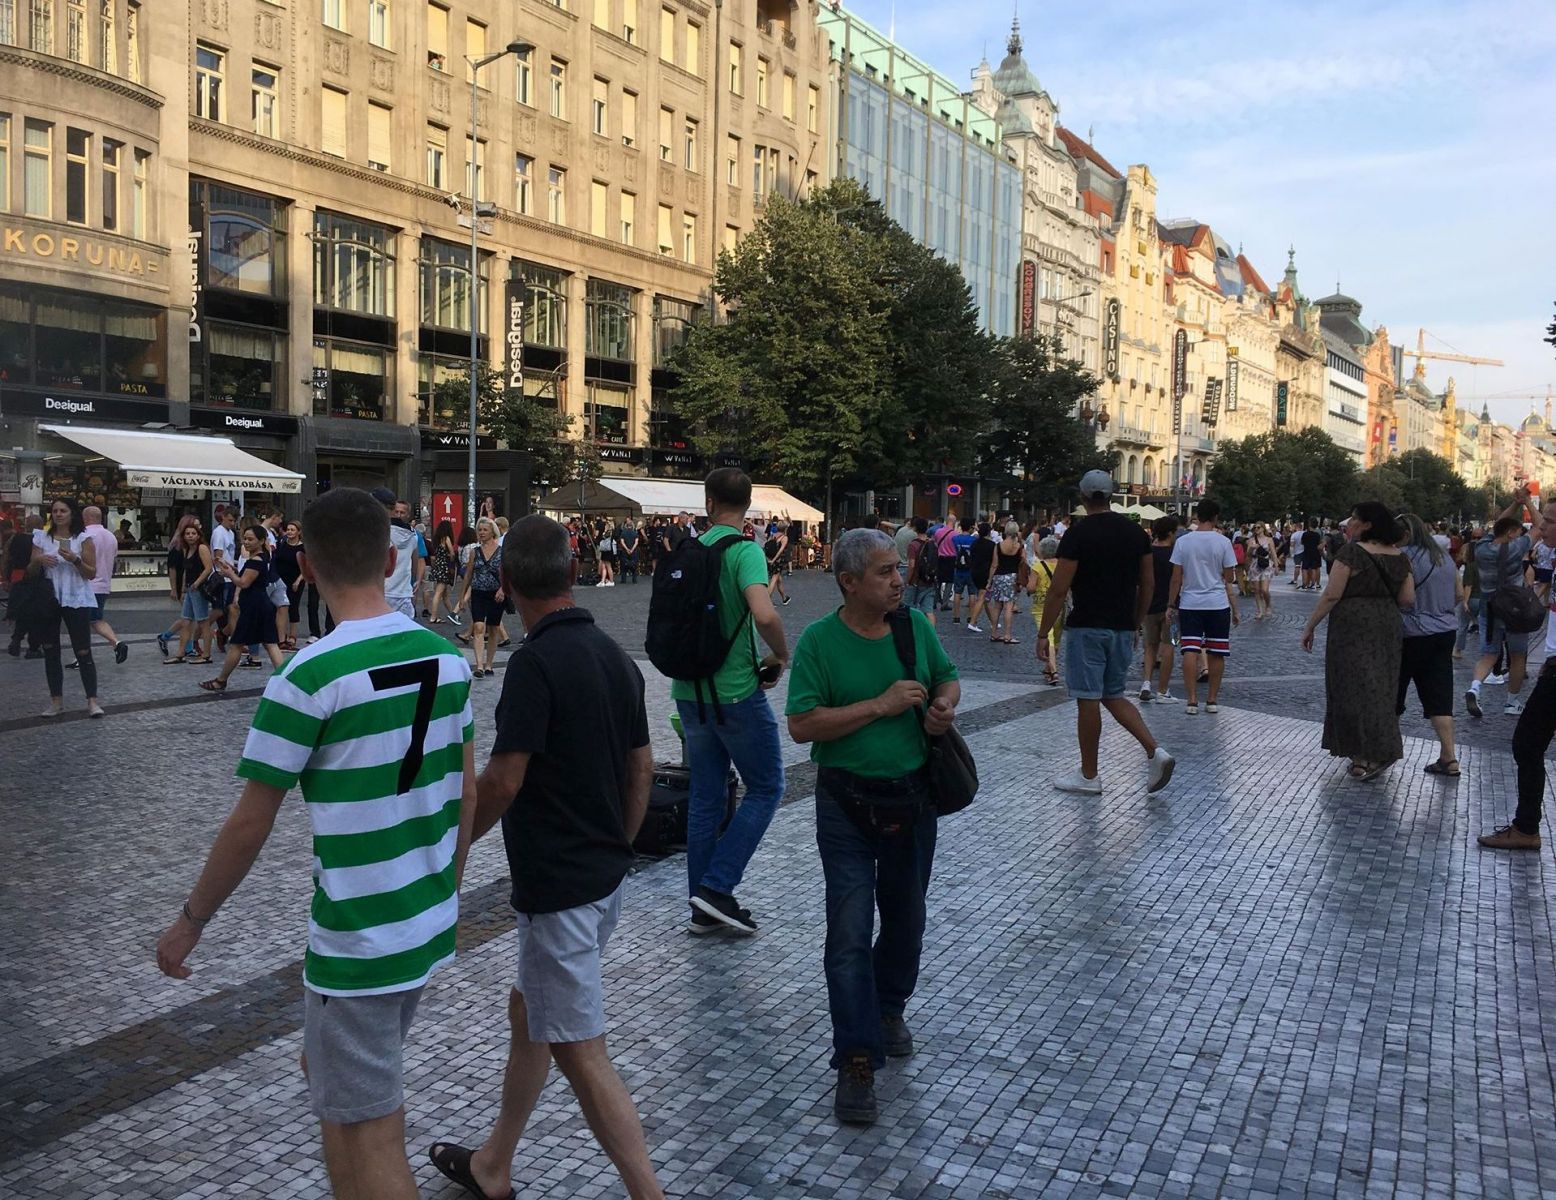 De térjünk vissza a focihoz. NAGYKÉPÜNK két szerzője a Celtic Glasgow több szurkolójával is találkozott Prágában. A skót bajnok neve ismerősen csenghet a kolozsváriak számára, ugyanis a CFR a Bajnokok Ligája előző fordulójában épp a Celticet búcsúztatta. S akkor feltevődik a kérdés, hogy mégis mit kerestek ők Prágában, mikor csapatuk egy nappal később Stockholmban szerepelt az AIK ellen (a Celtic 6-1-es összesítéssel bejutott az Európa-liga csoportkörébe - szerk. megj.)? 
